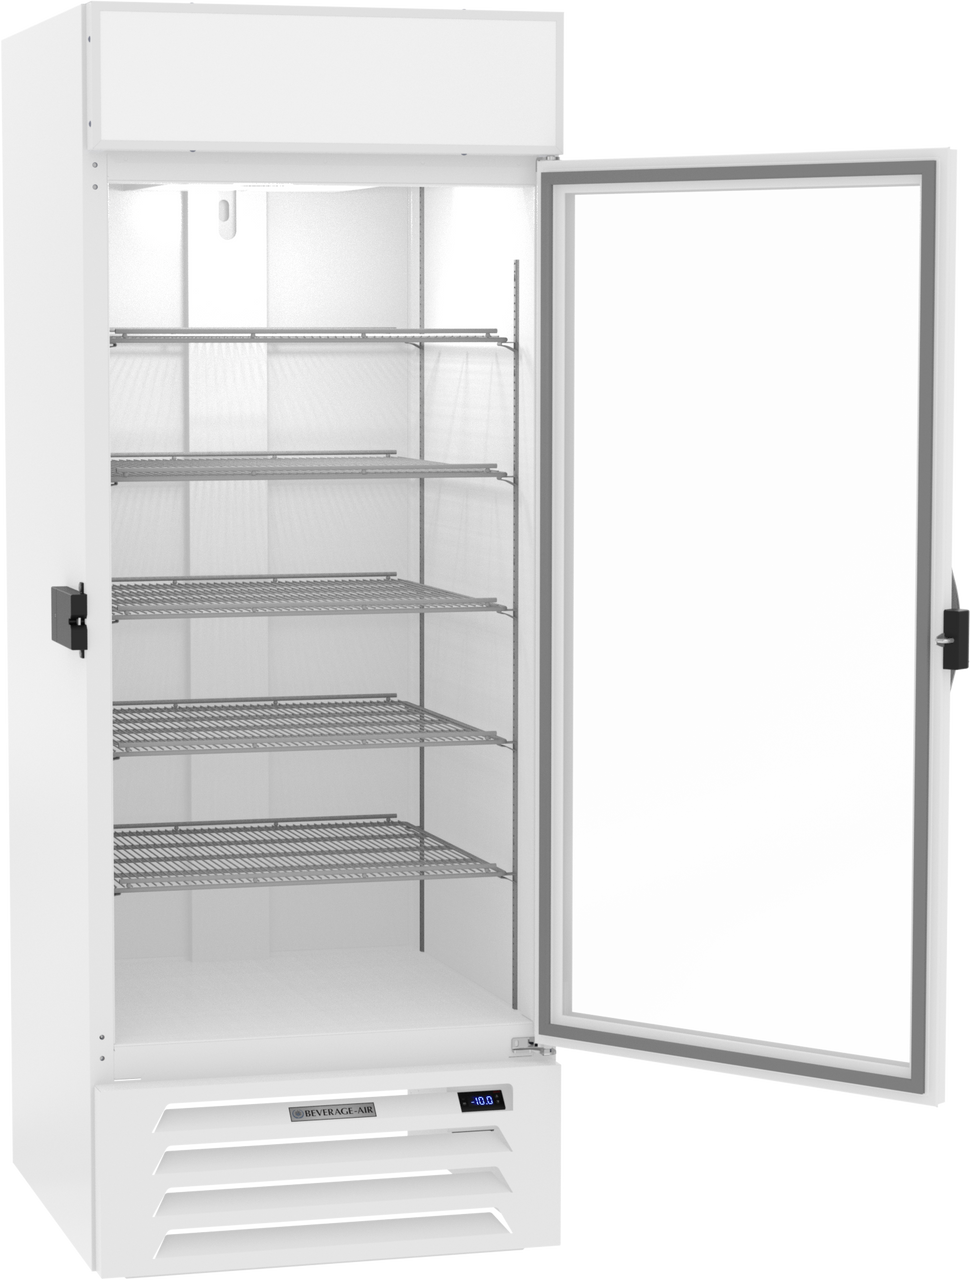 Beverage-Air MMF27HC-1-W-IQ 30" MarketMax IQ Series One Section Glass Door Merchandiser Freezer in White